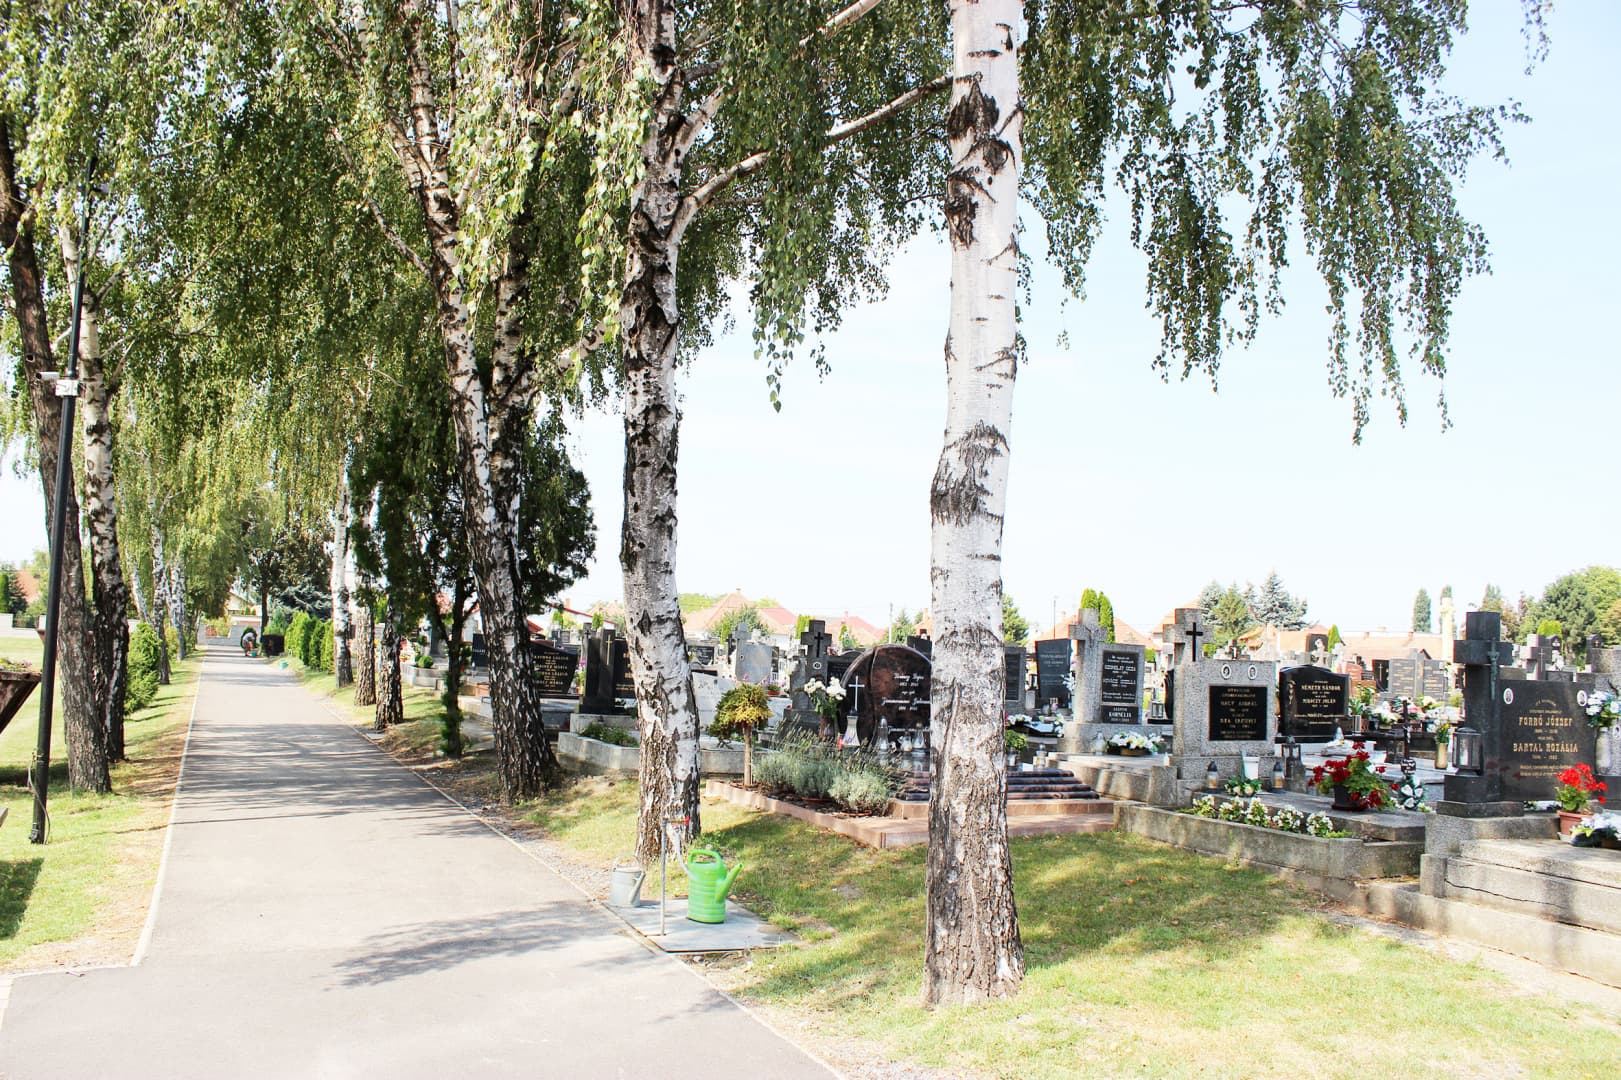 Dekoratív temetőjük van a nyárasdiaknak